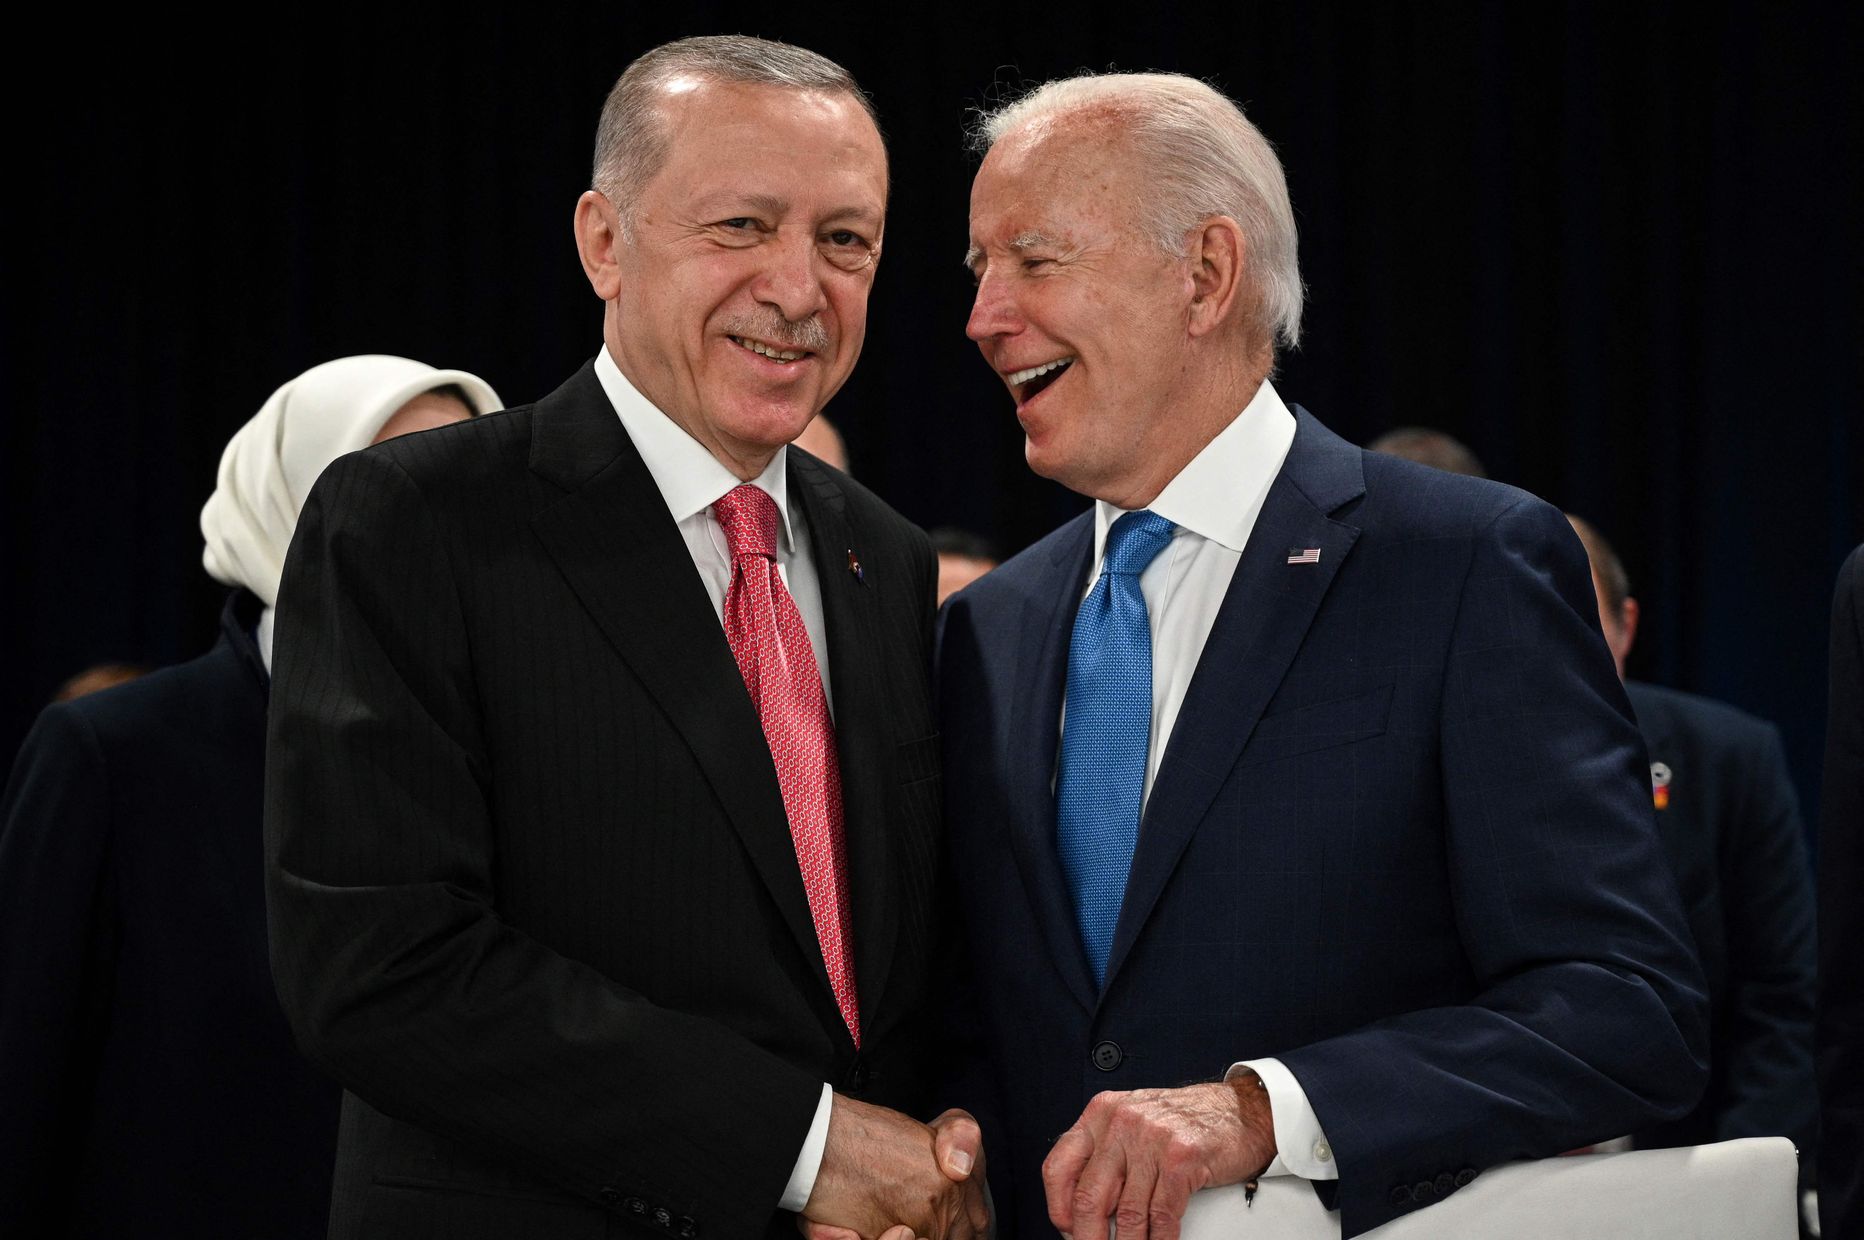 Президент Турции Реджеп Тайип Эрдоган (слева) и президент США Джо Байден обмениваются рукопожатием в начале первого пленарного заседания саммита НАТО в конгресс-центре Ifema в Мадриде, 29 июня 2022 года.